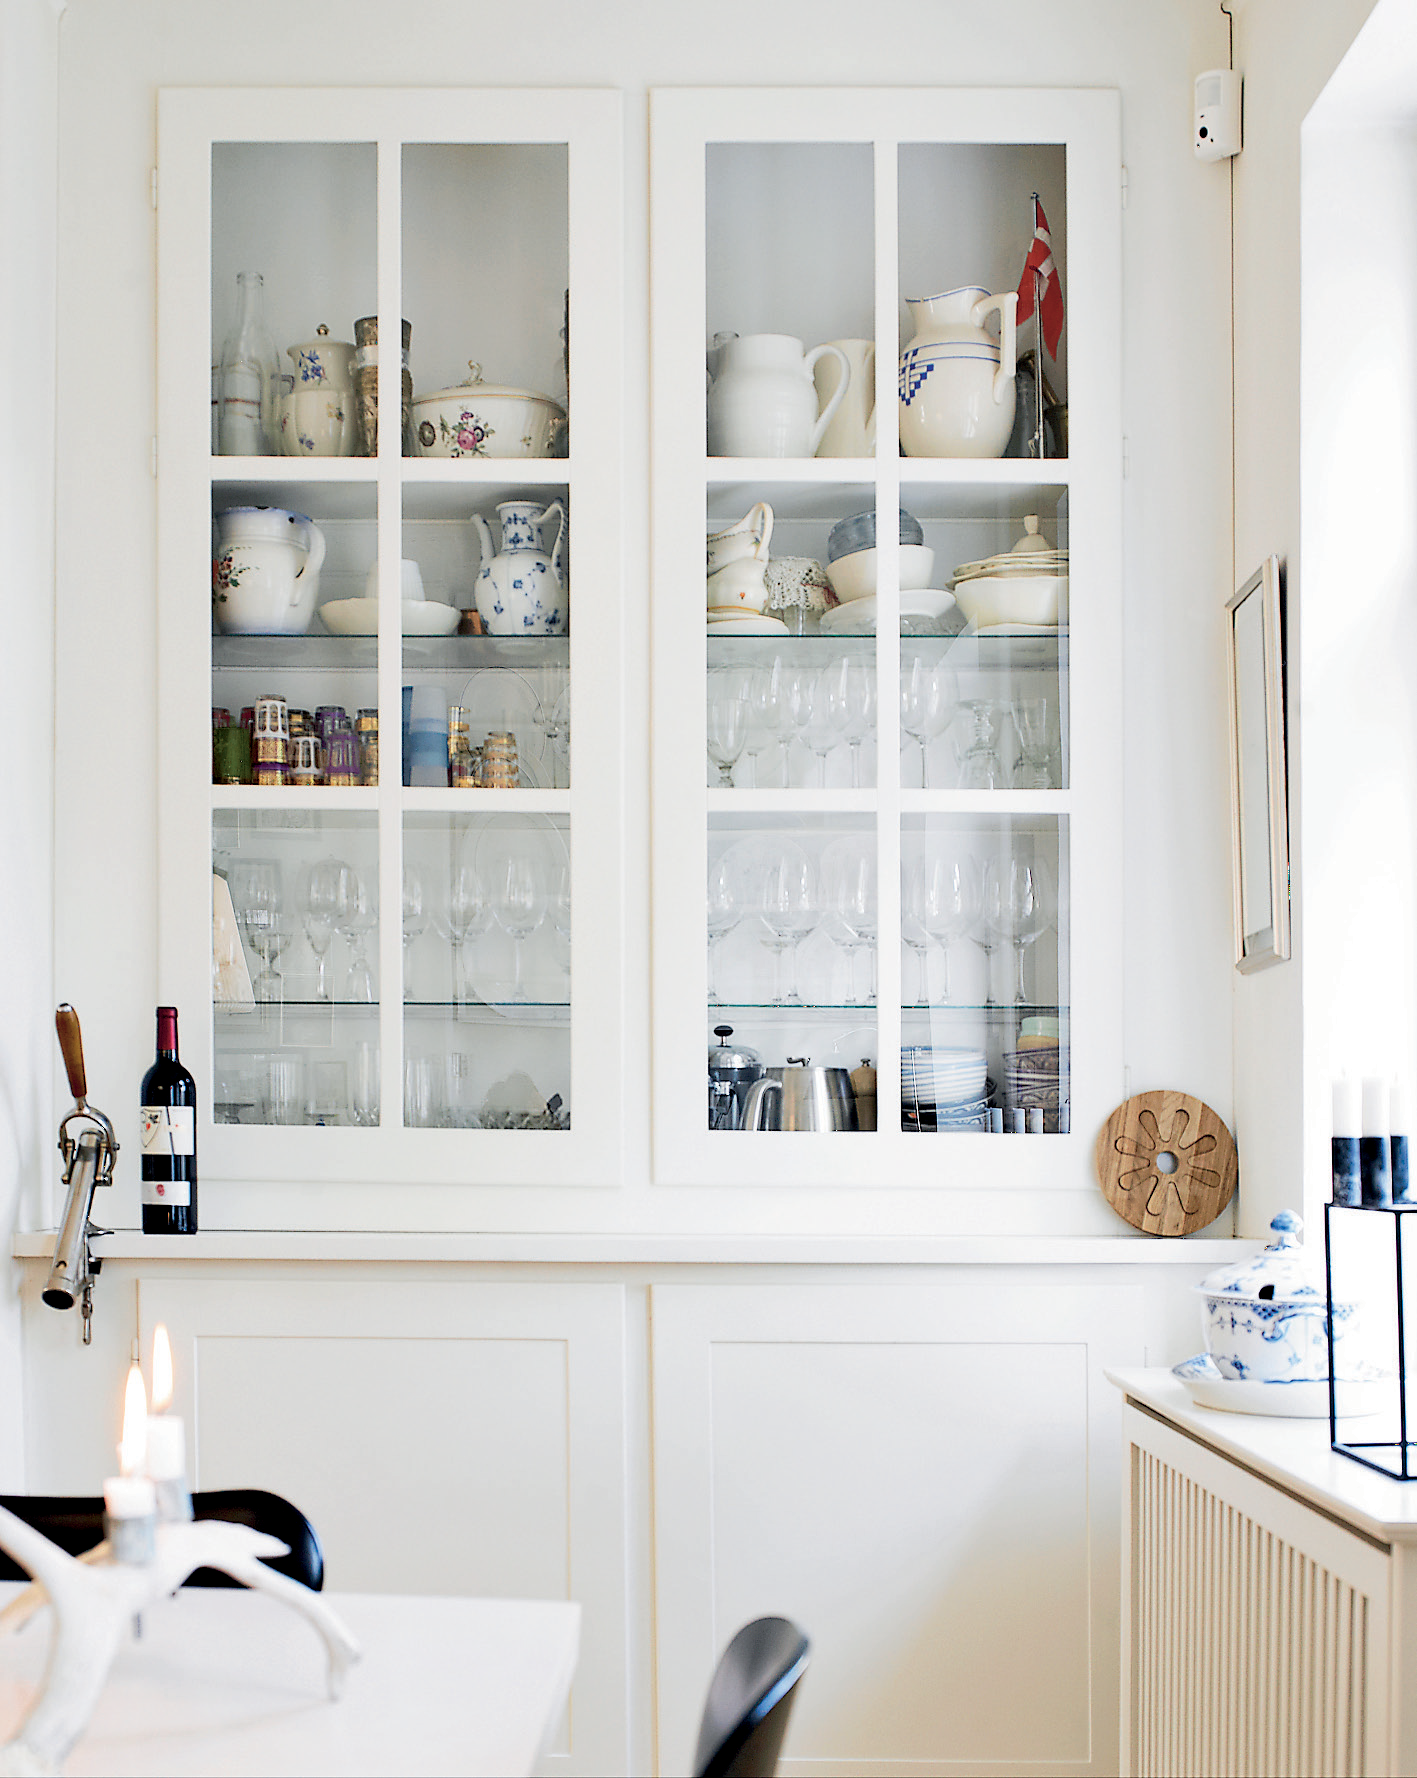 snuk hvid vitrine med alt det køkkenudstyr man ønsker sig lige ved hånden